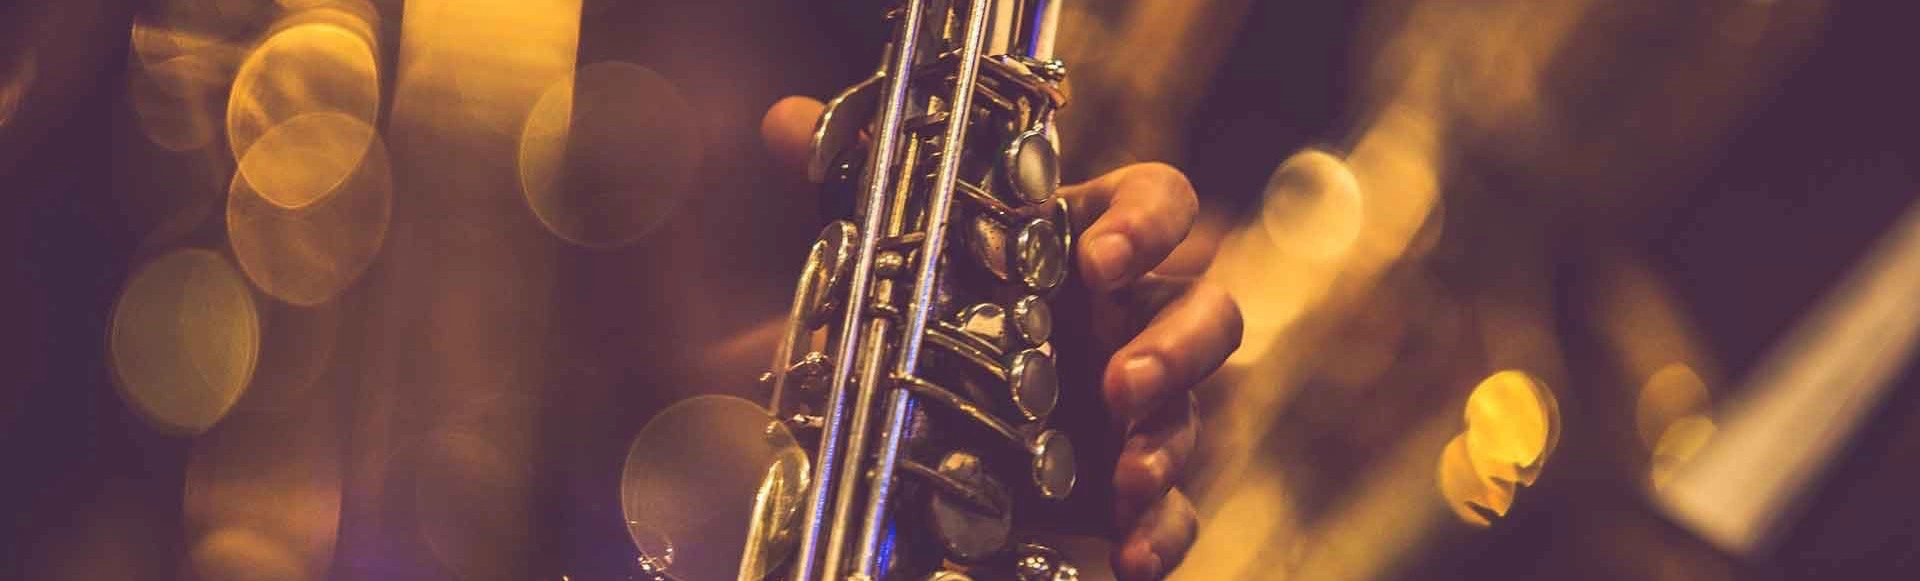 Виртуозное джаз-произведение: уникальный концерт с участием обладателя Премии Грэмми в Зале органной и камерной музыки им. Дебольской